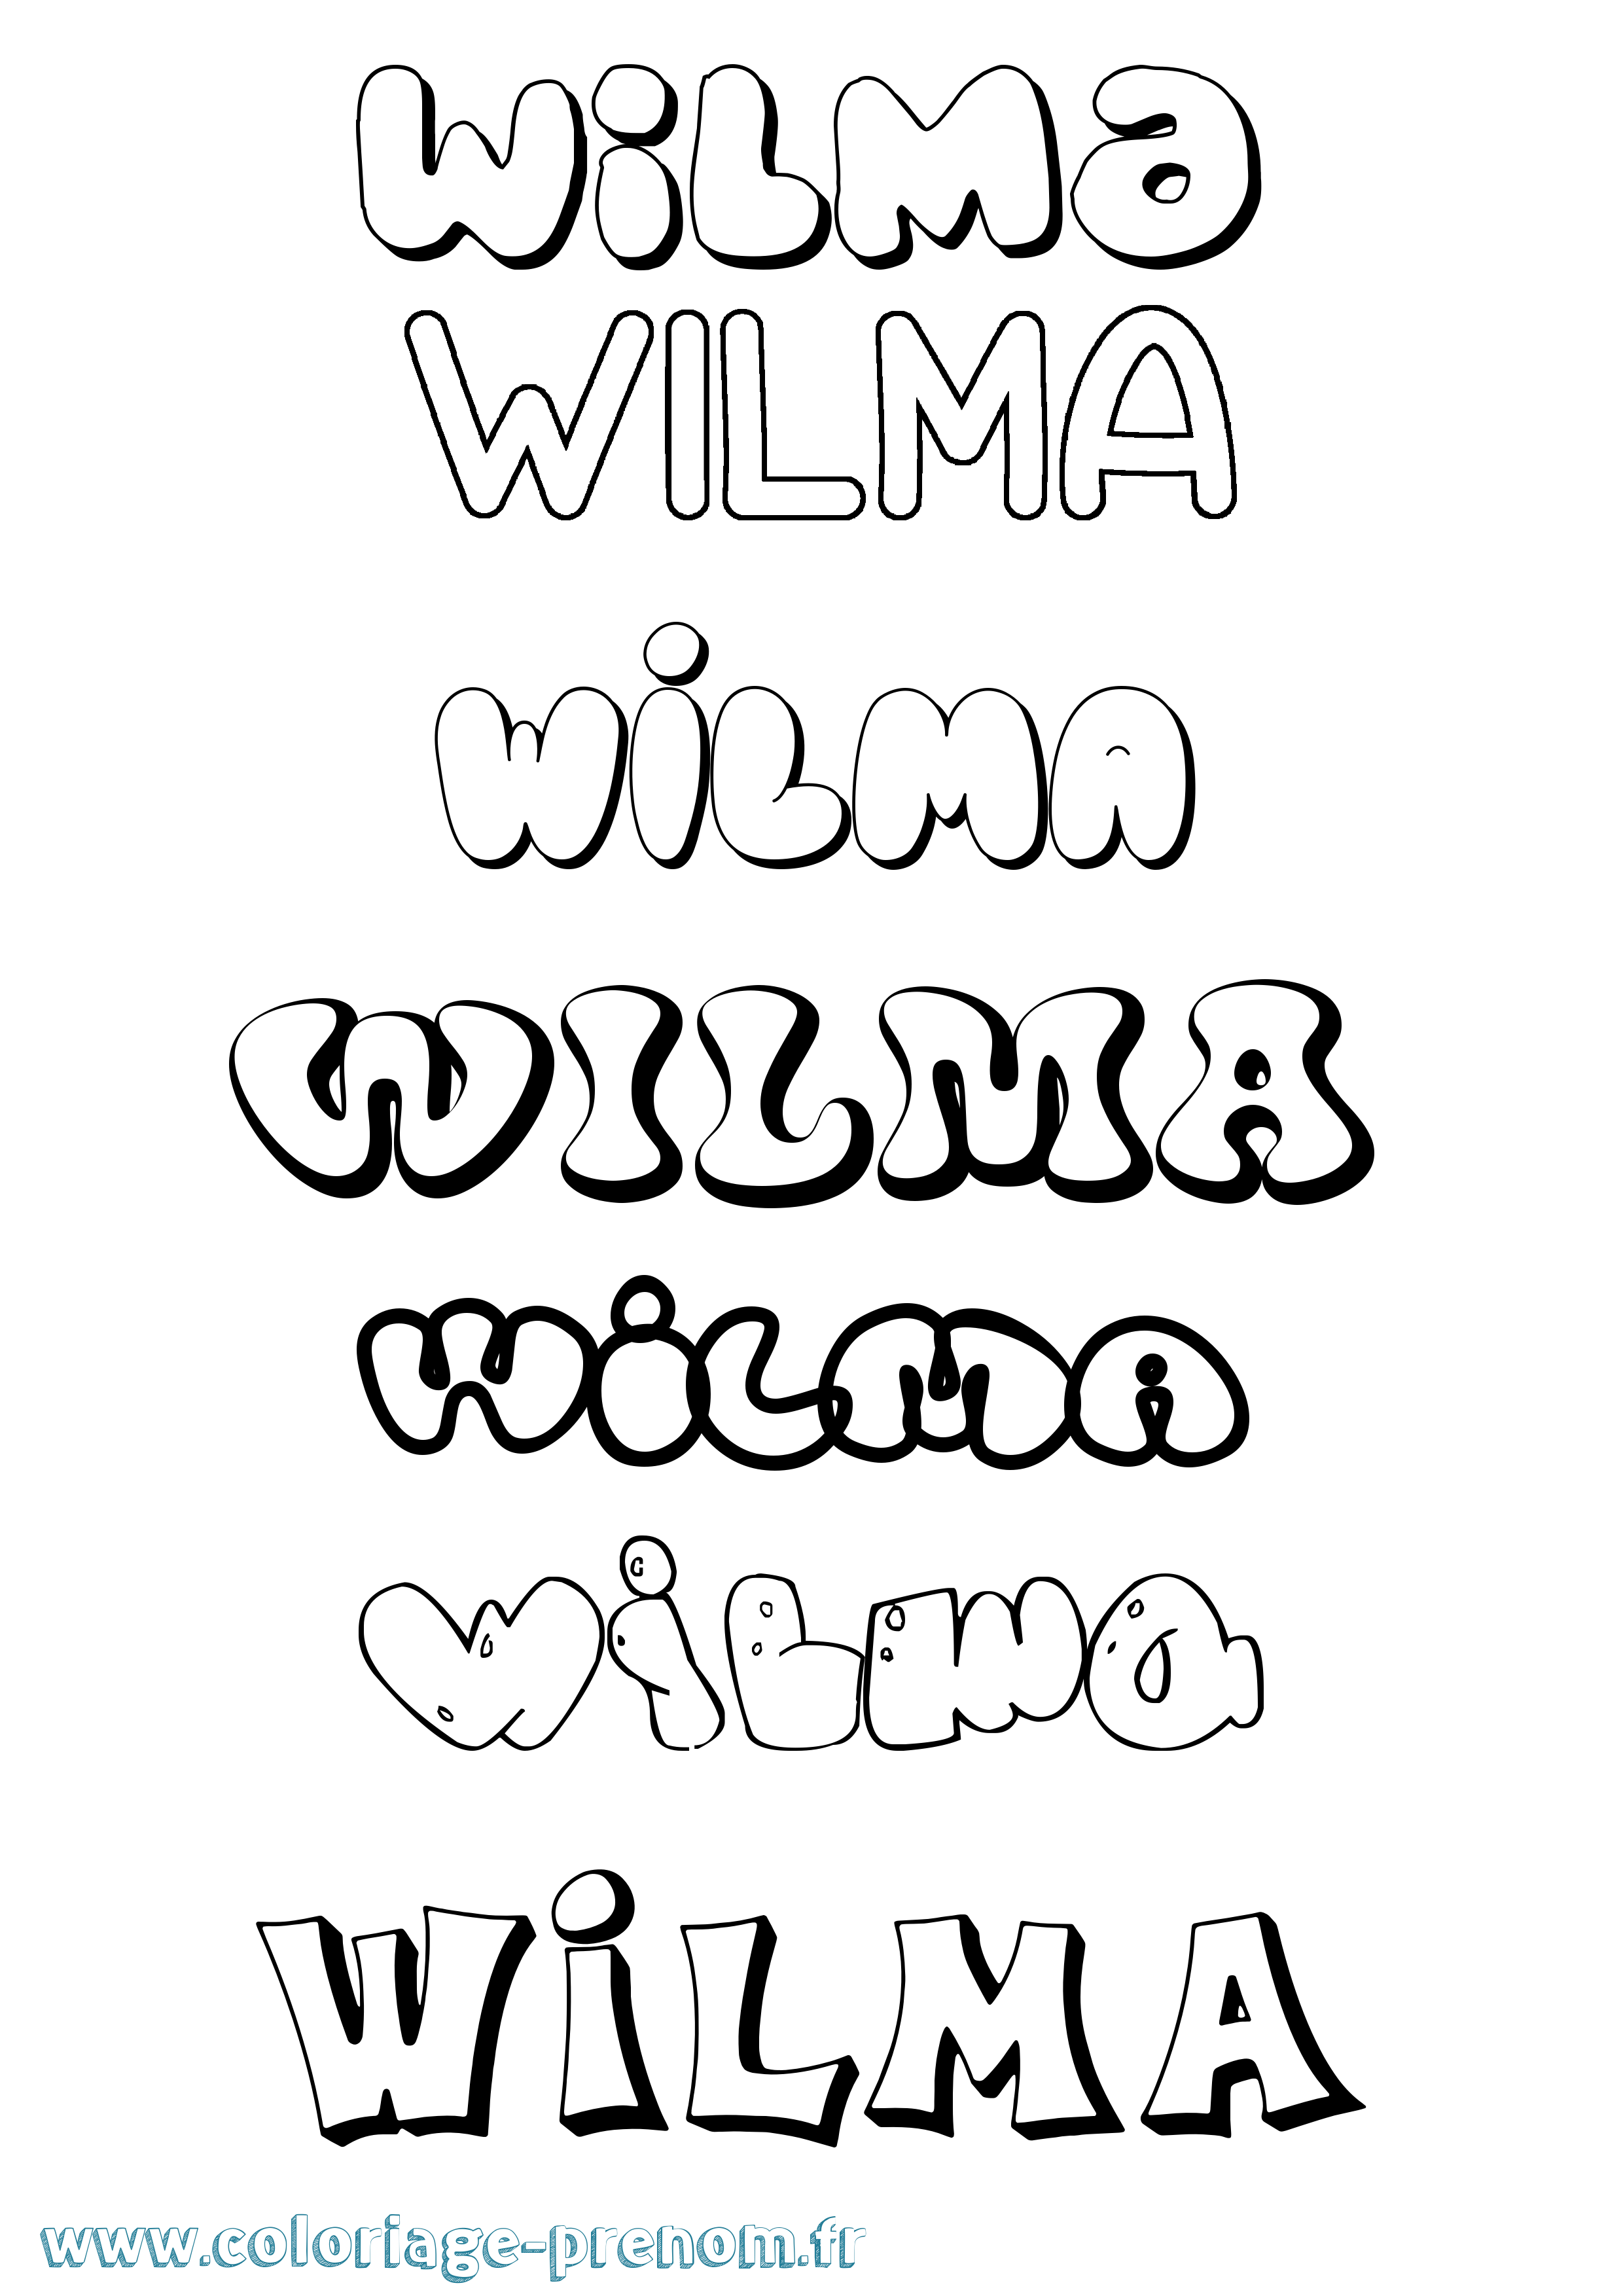 Coloriage prénom Wilma Bubble